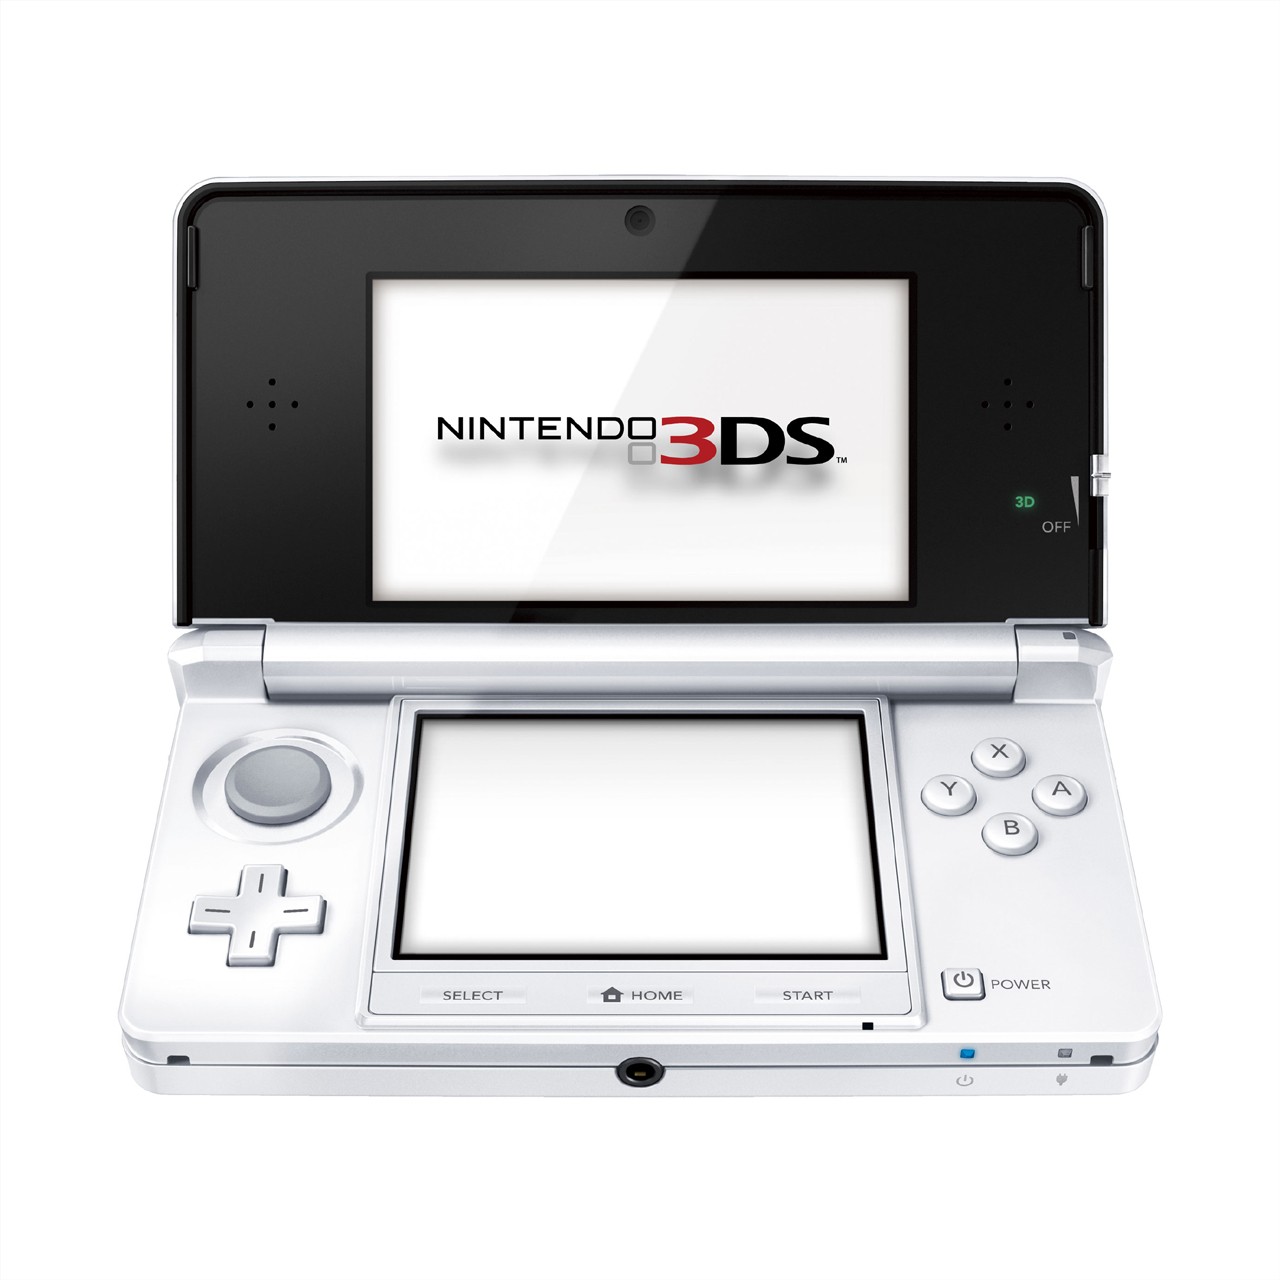 初代 Nintendo 3DS / 3DS LL 因零件缺乏 已提前于 3 月 8 日结束维修服务